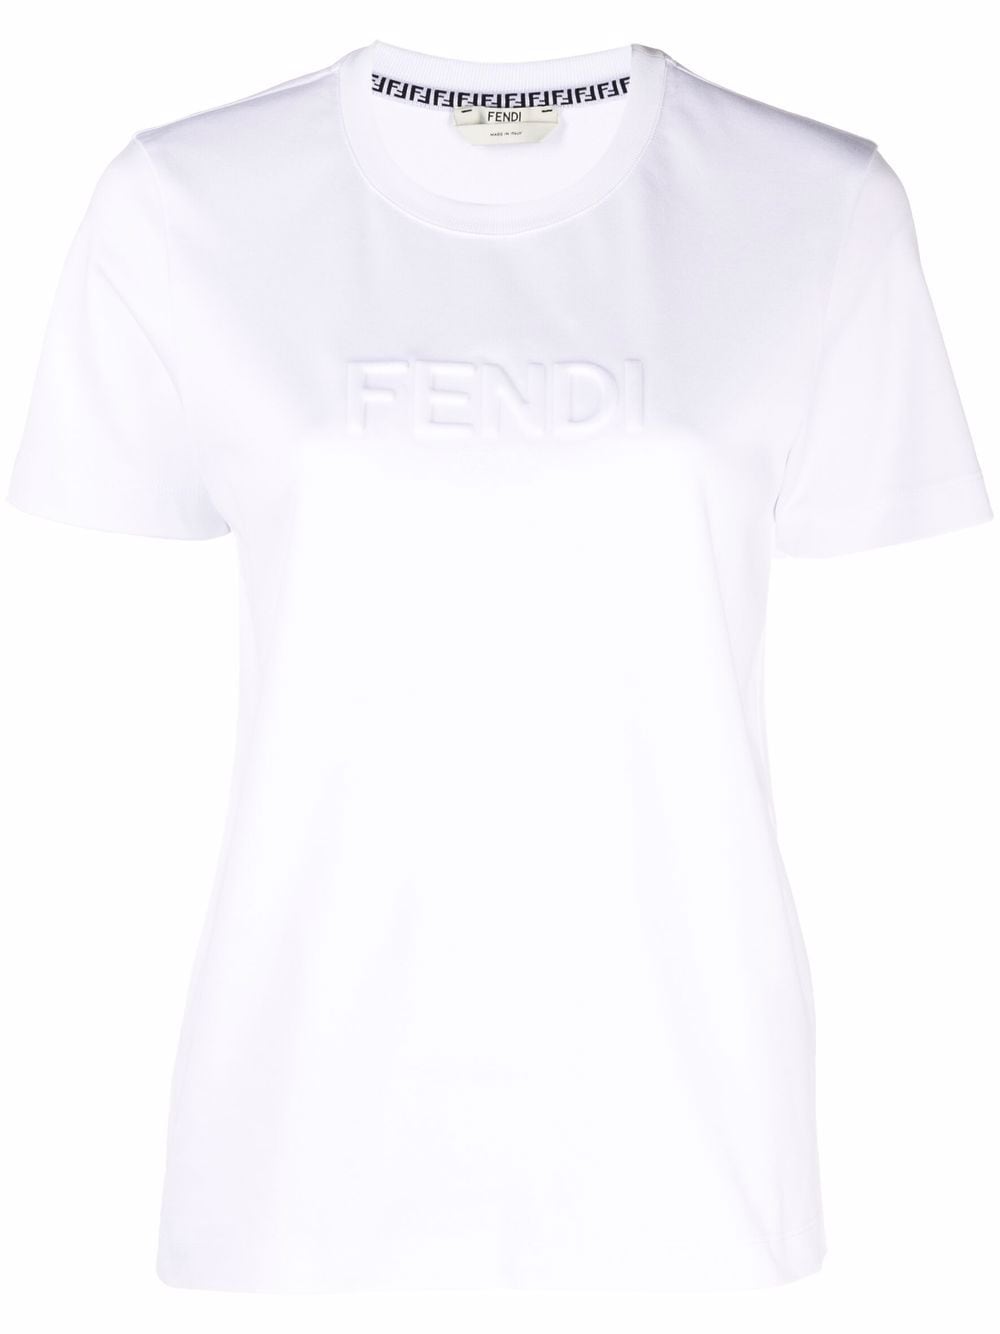 фото Fendi футболка с тисненым логотипом